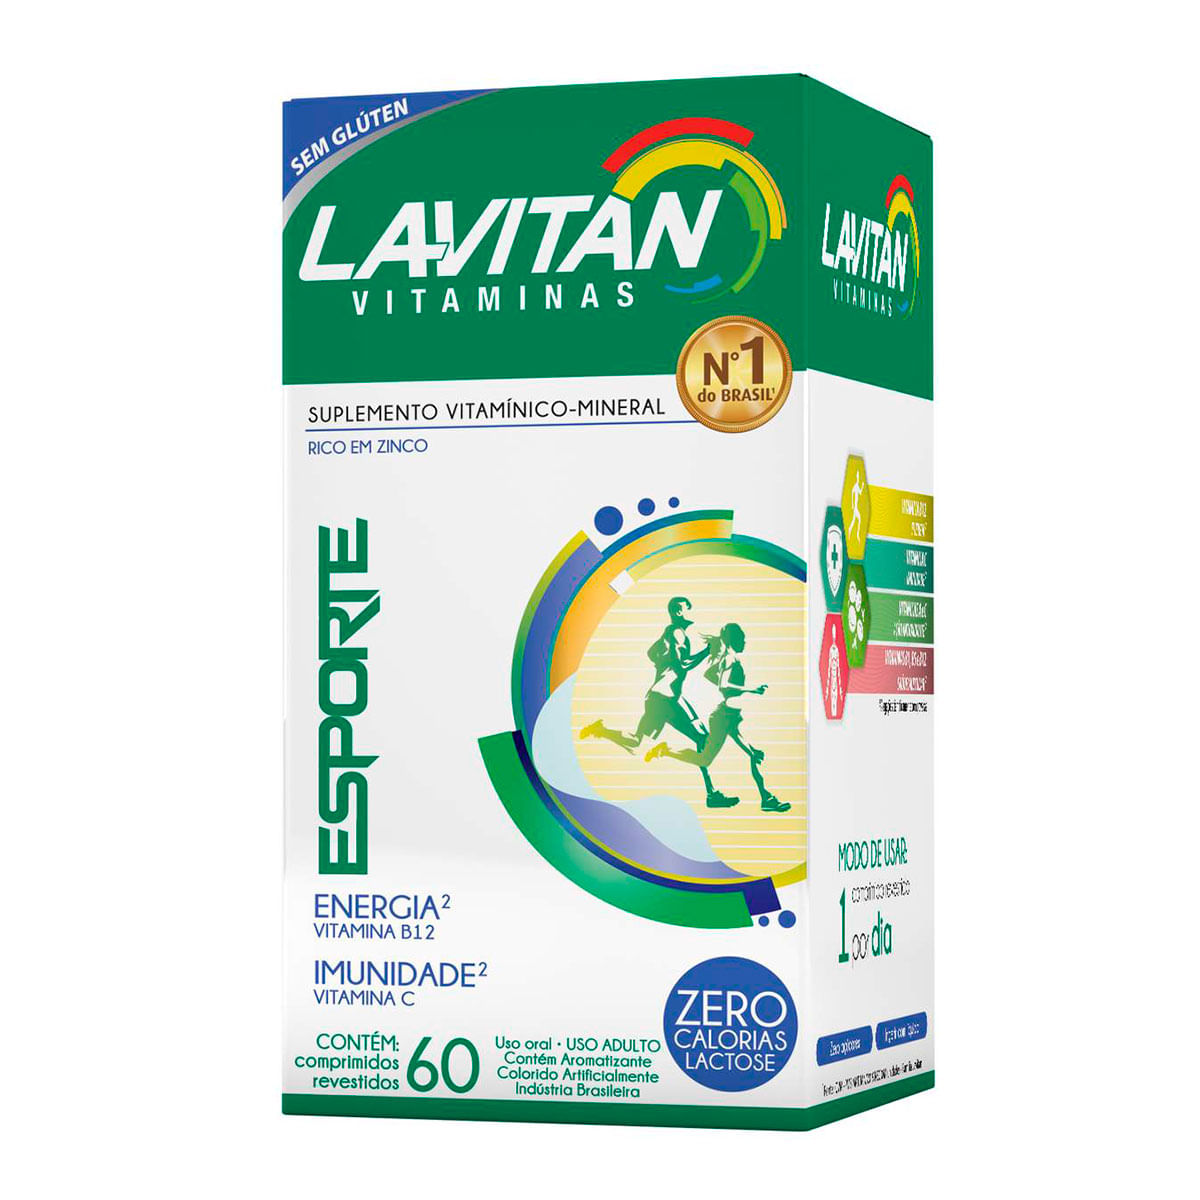 Lavitan Vitaminas Esporte Suplemento Vitamínico-Mineral Rico em Zinco com 60 Comprimidos Cimed